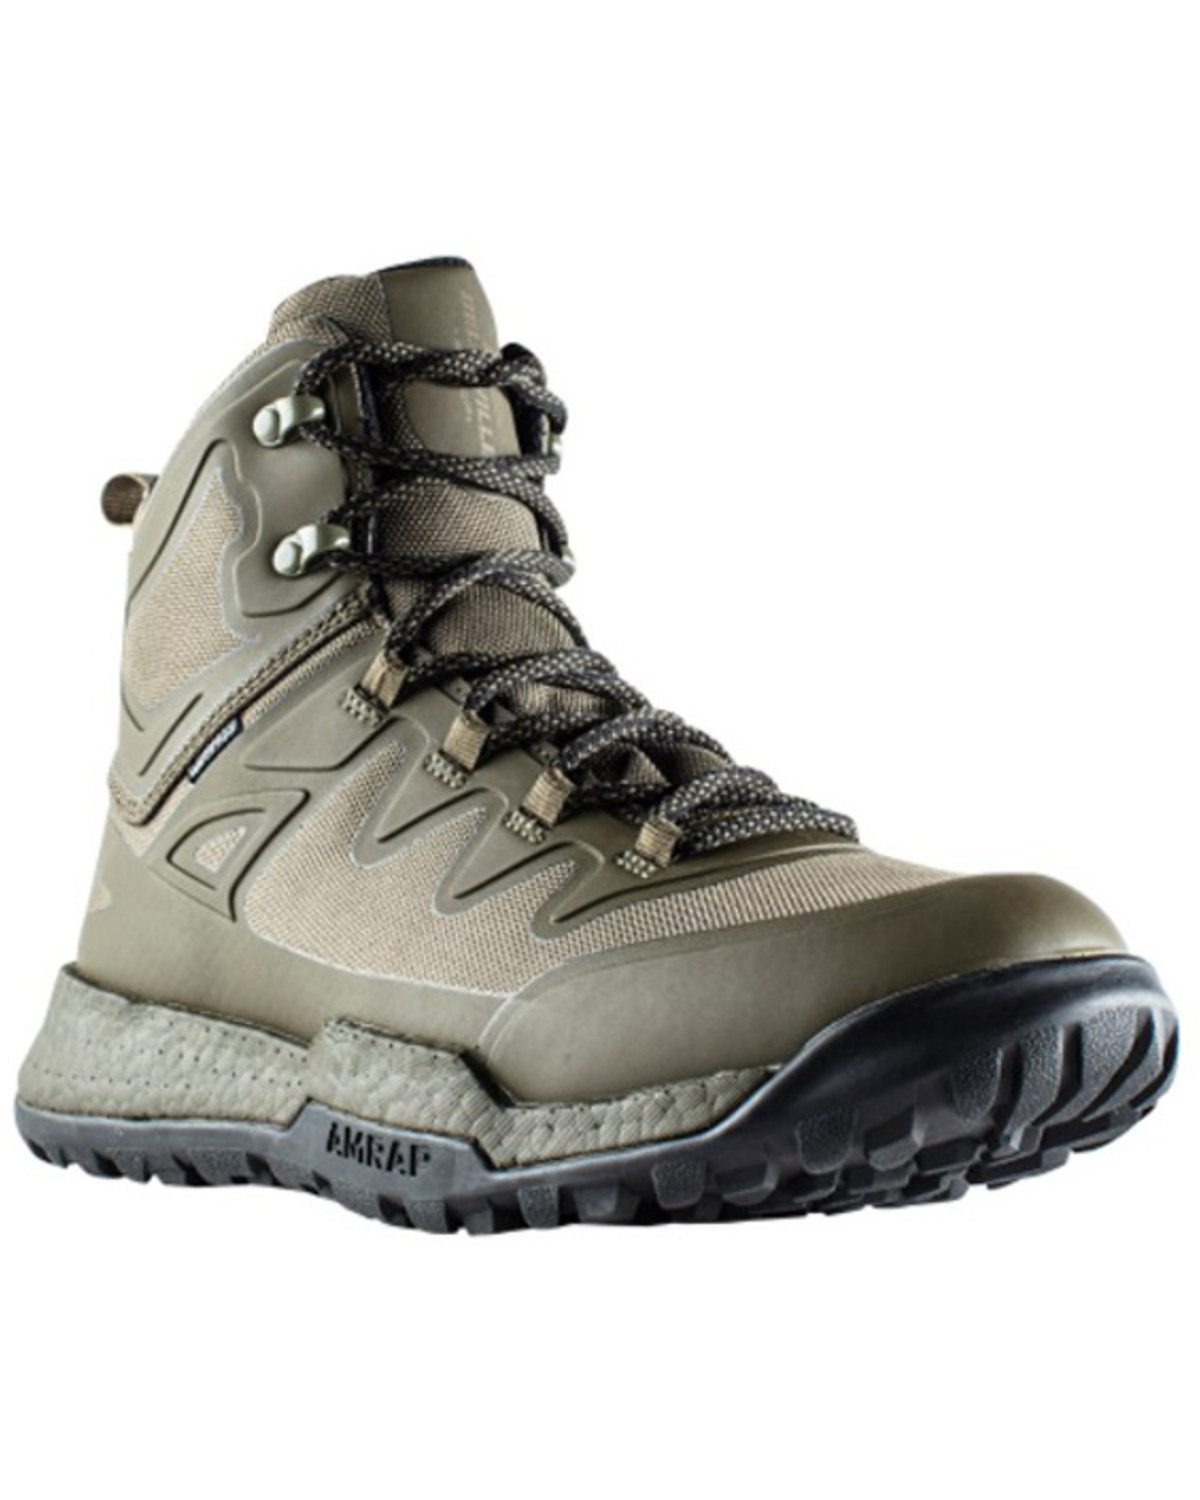 Belleville Men's 6" AMRAP Vapor Tactical Boots - Soft Toe